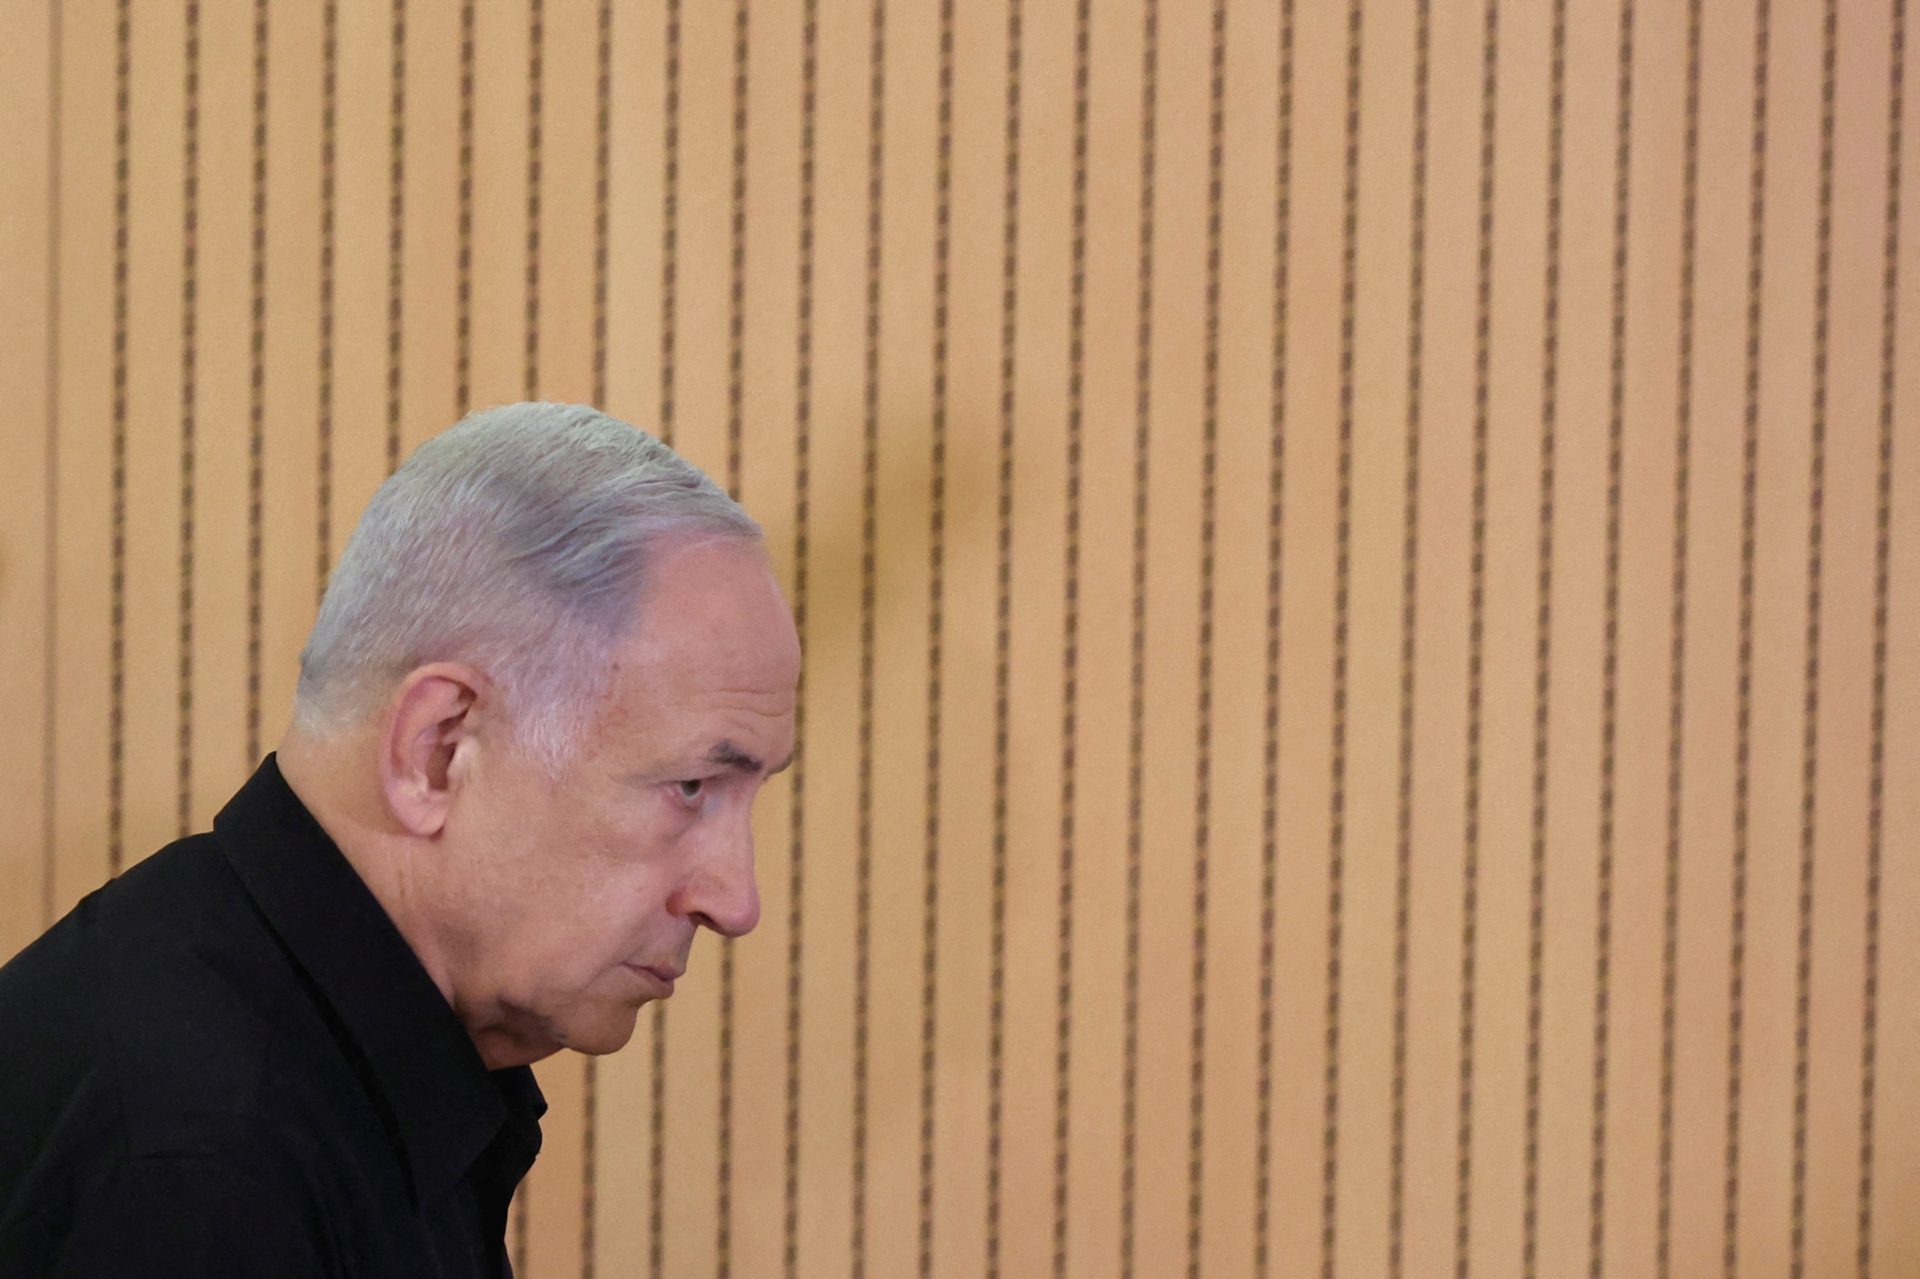 Mediapart Netanyahu et sa stratégie de négociations stériles